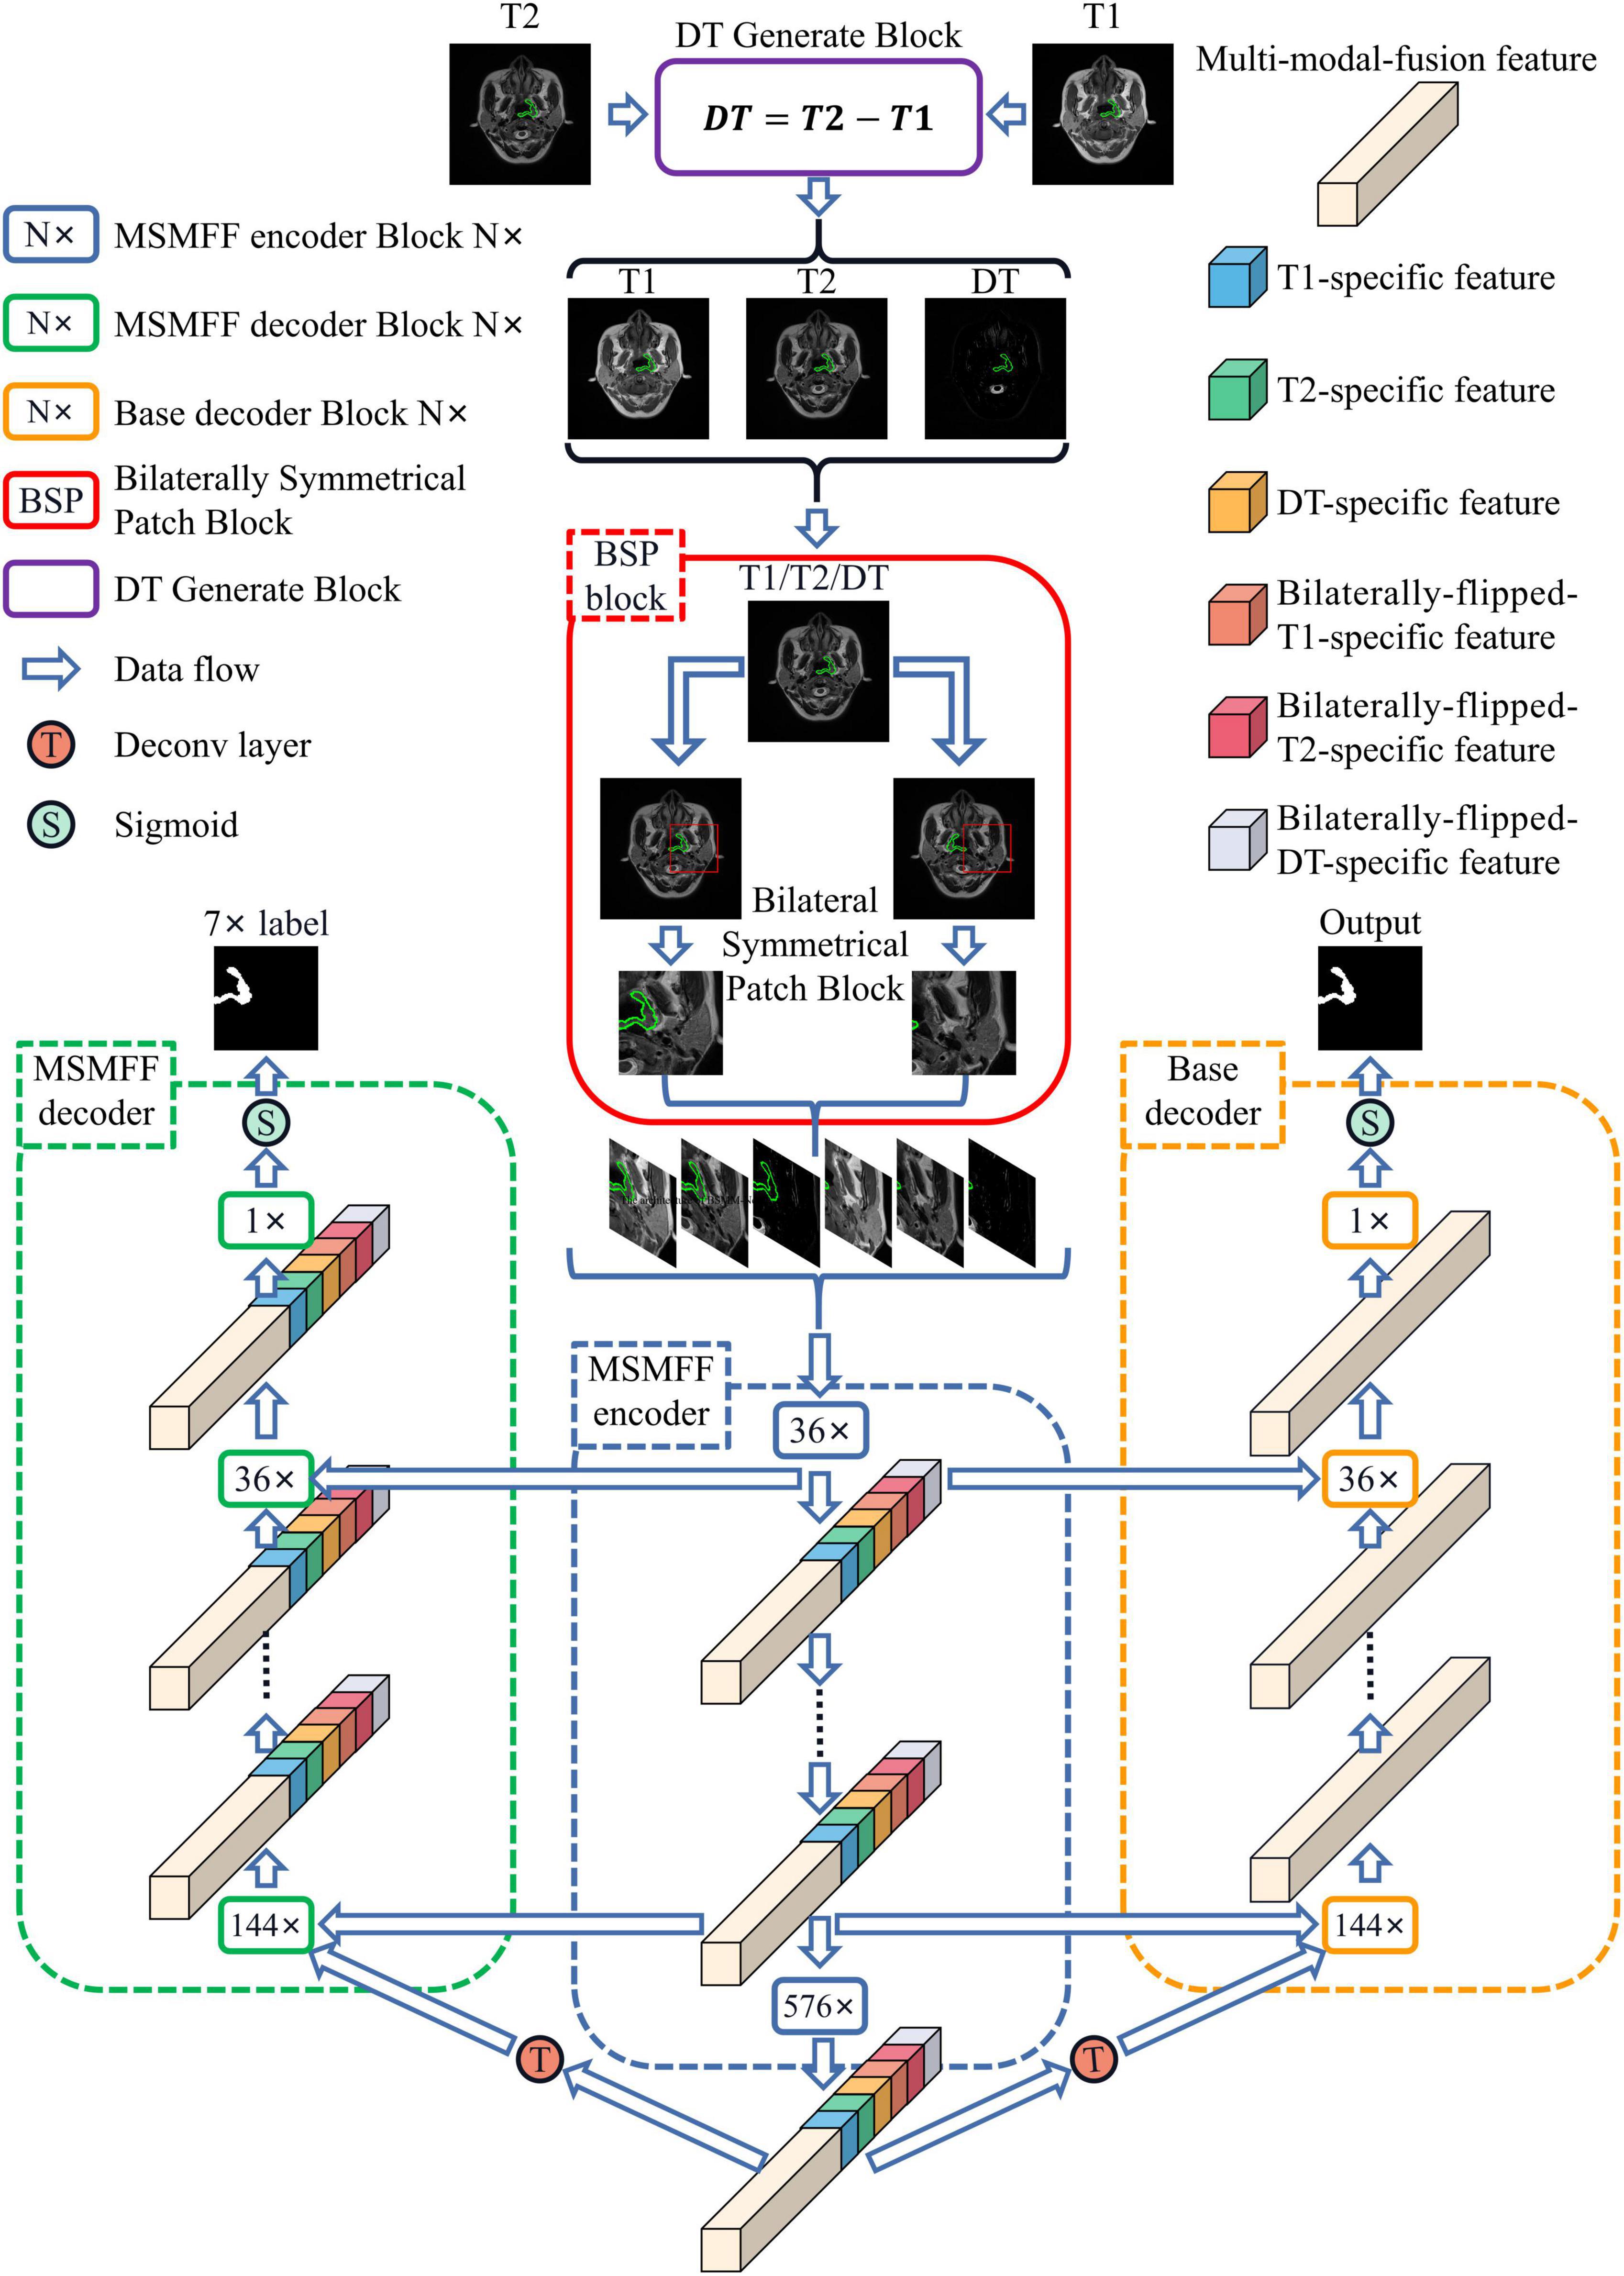 BSMM-Net: Multi-modal neural network based on bilateral symmetry for nasopharyngeal carcinoma segmentation